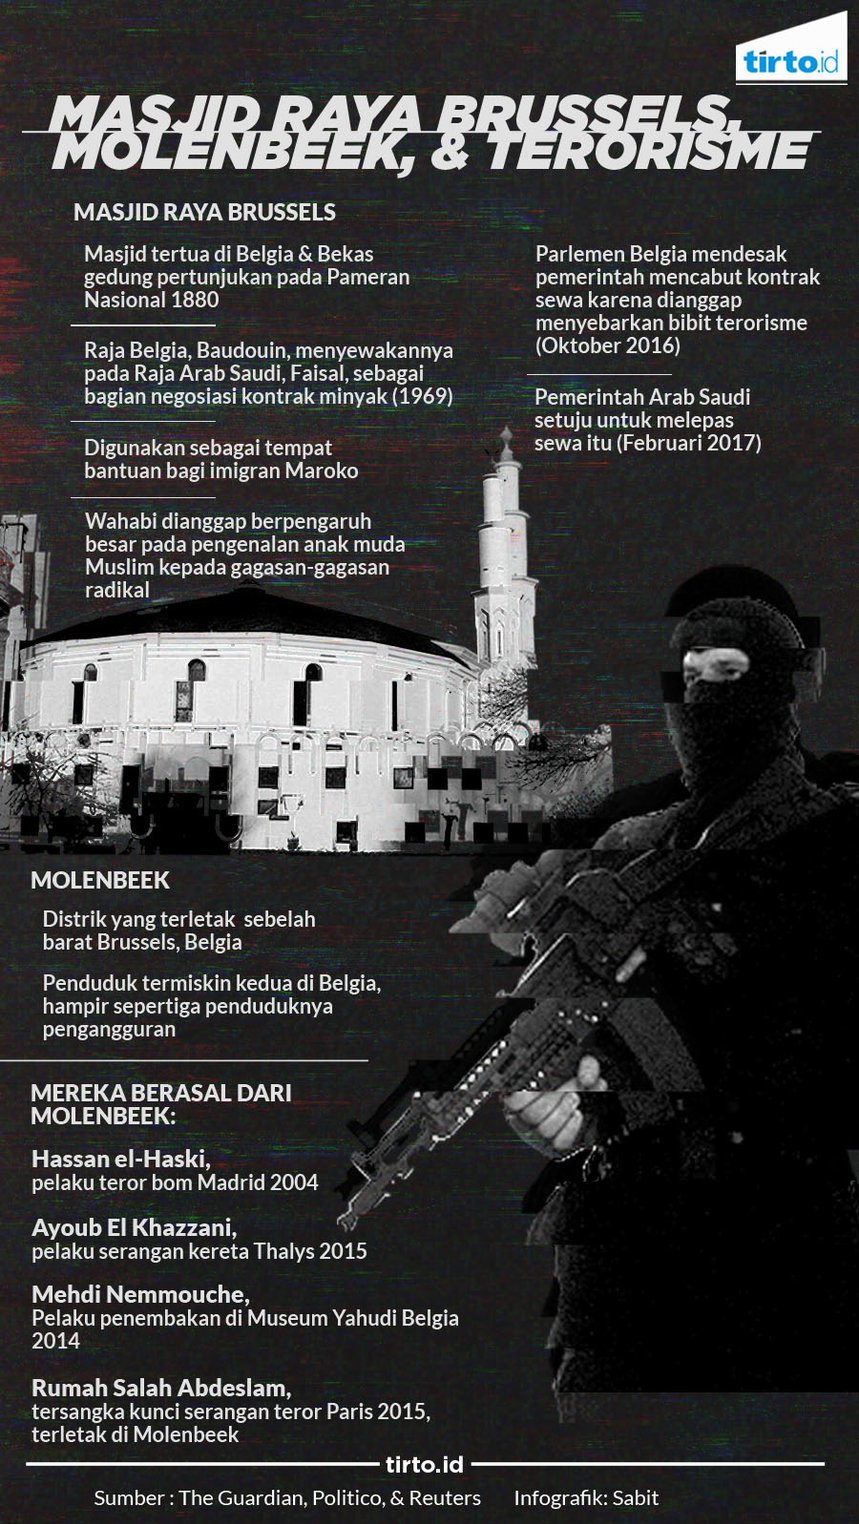 Infografik Masjid raya brussels 